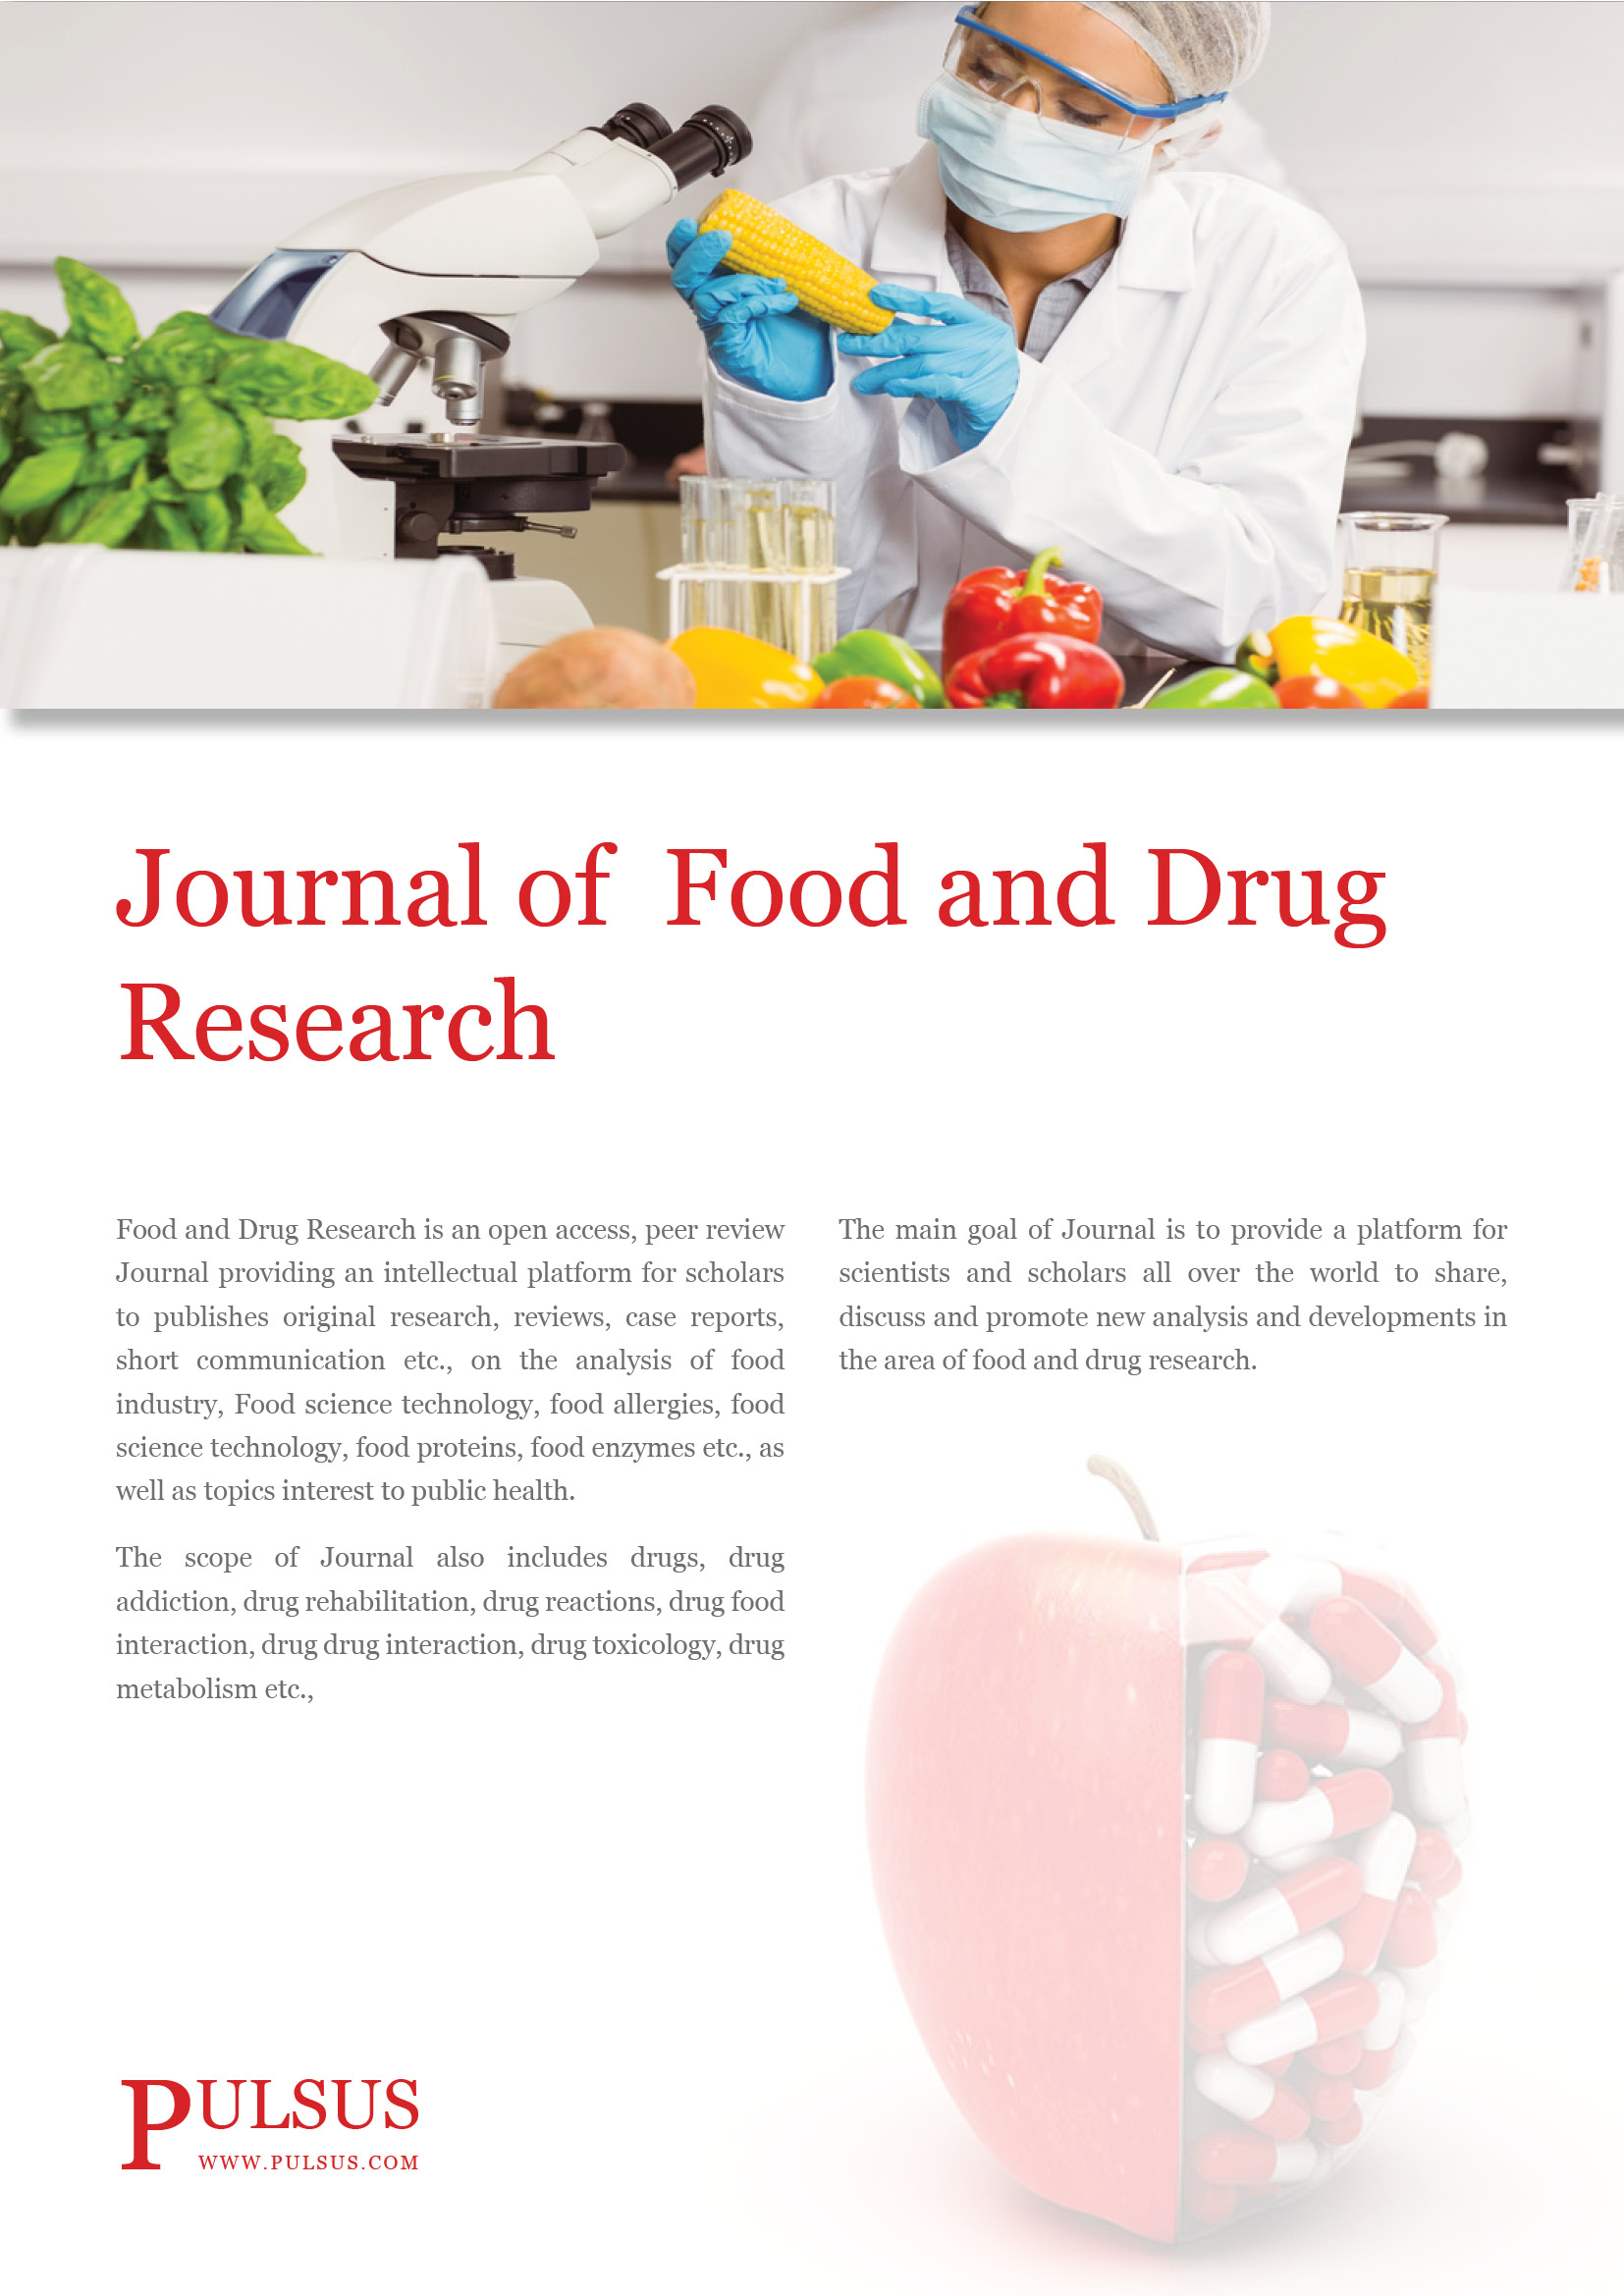 Journal de recherche sur les aliments et les médicaments